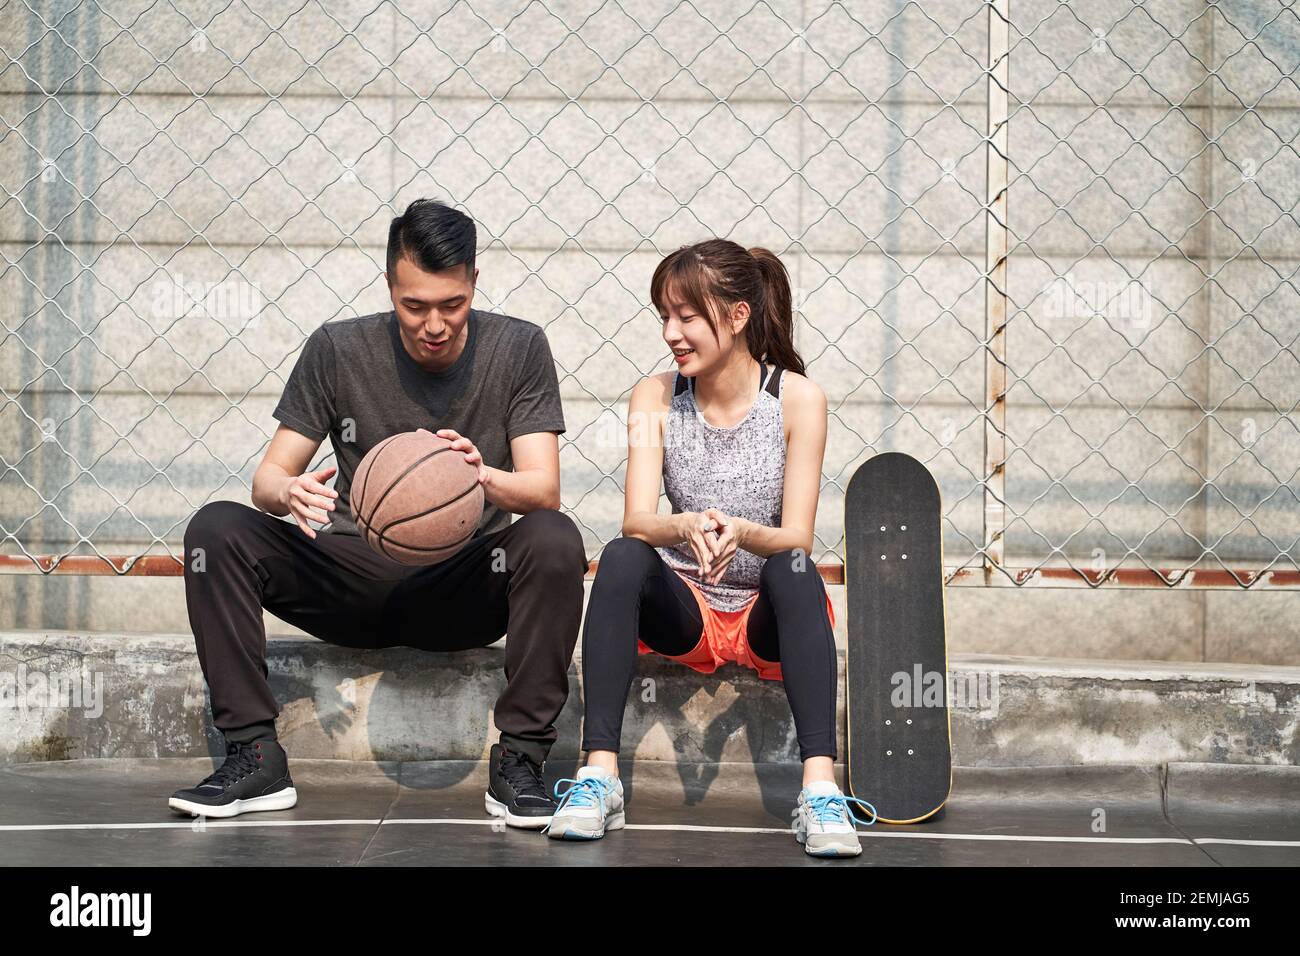 Junge asiatische Erwachsene männliche Basketballspieler und weibliche Skateboarder sitzen Auf der Gerichtsseite reden chatten Stockfoto